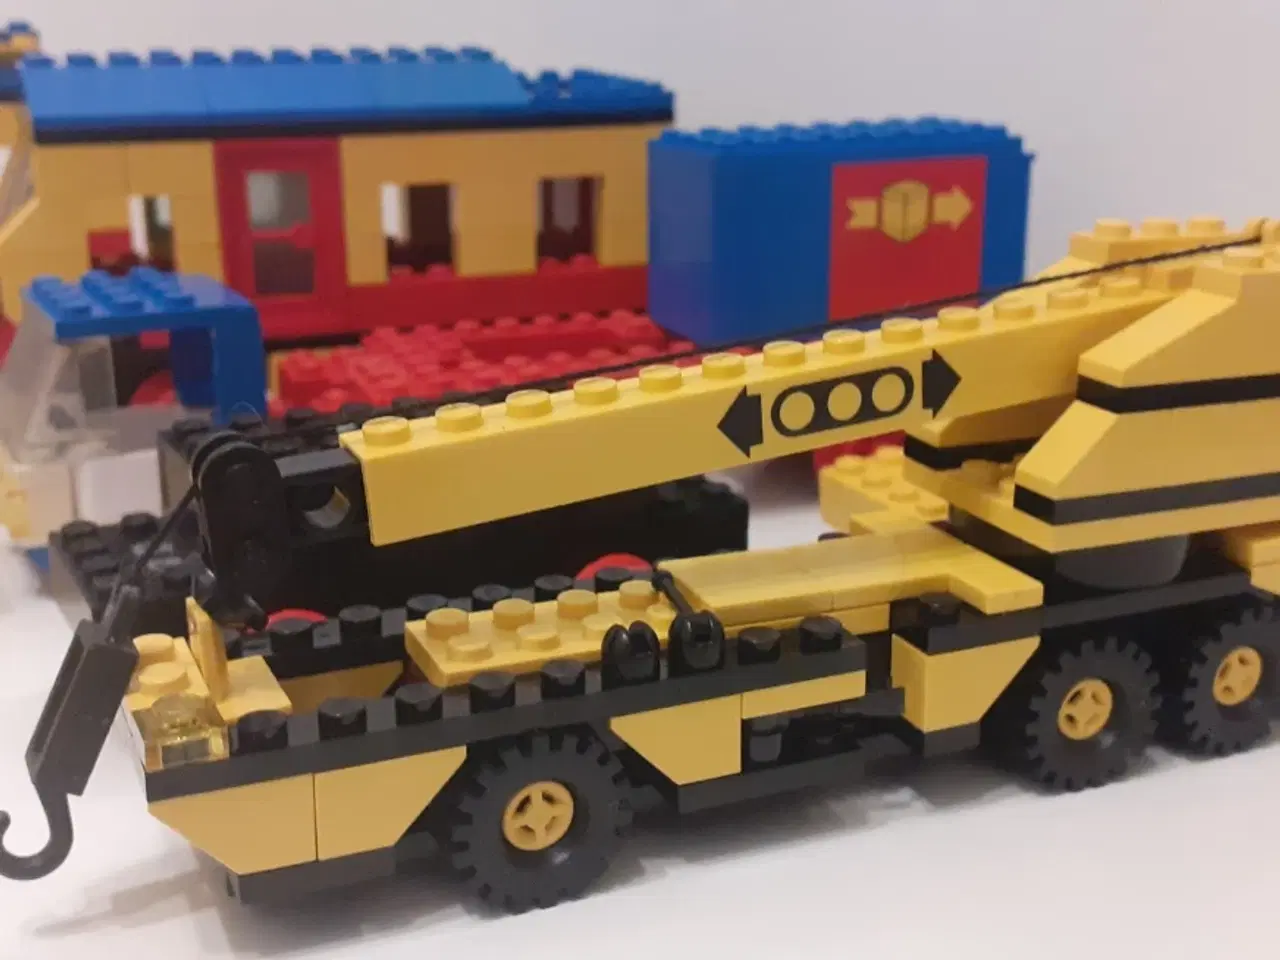 Billede 3 - LEGO tog, stor kranbil, motorenhed med hjul m.m.